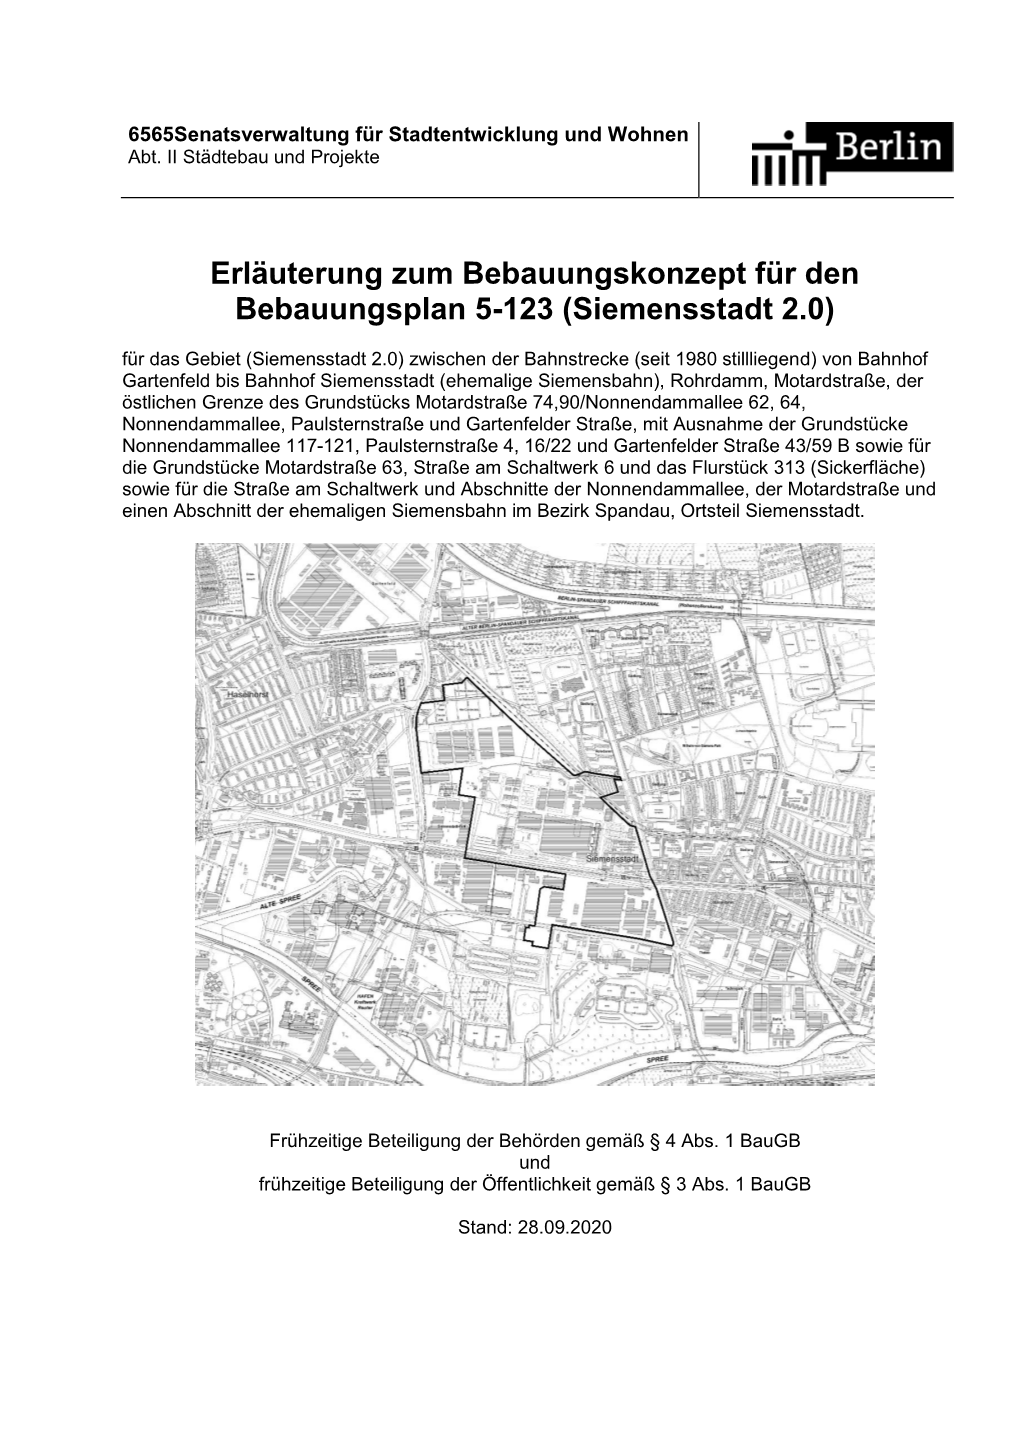 Erläuterung Zum Bebauungskonzept Für Den Bebauungsplan 5-123 (Siemensstadt 2.0)